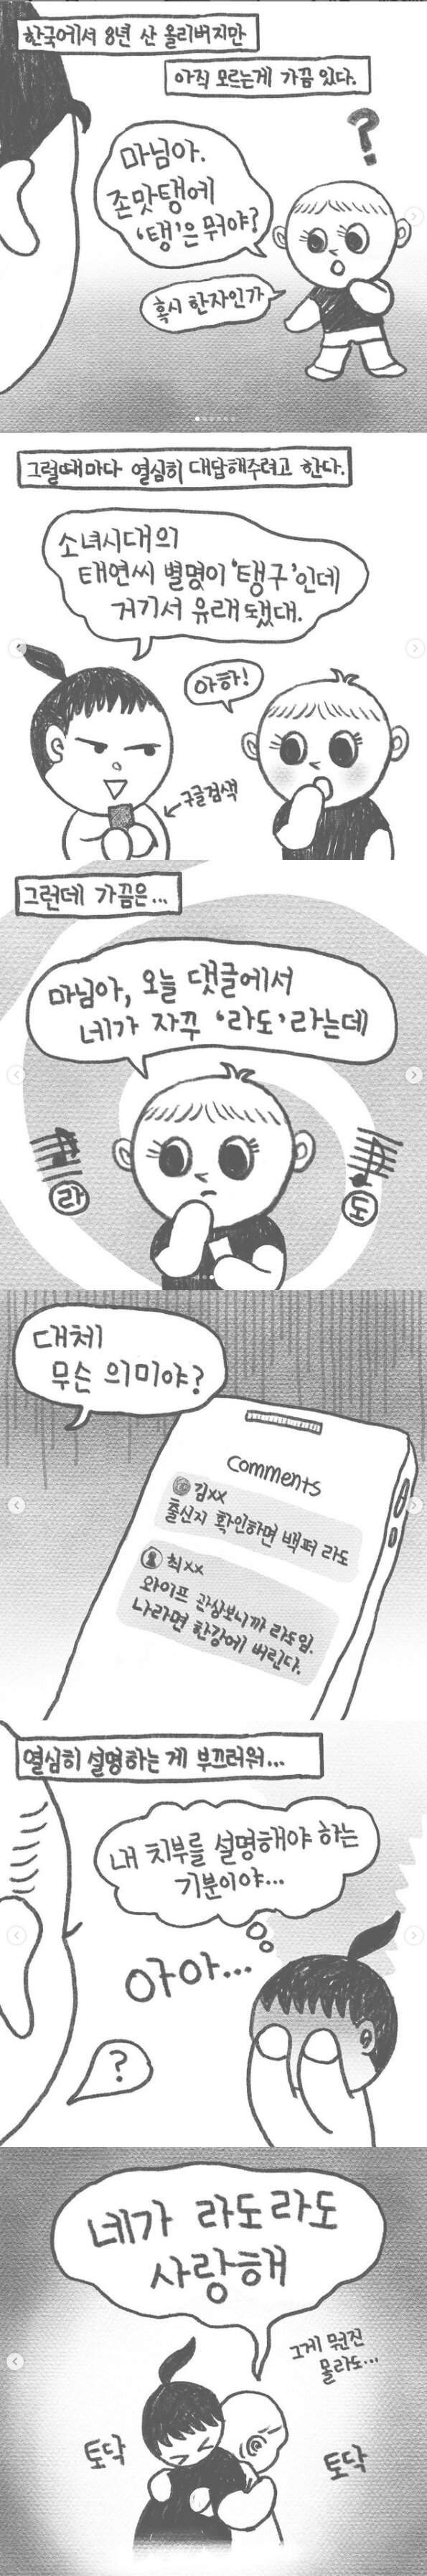 올리버쌤 와이프 공개후 달리는 댓글